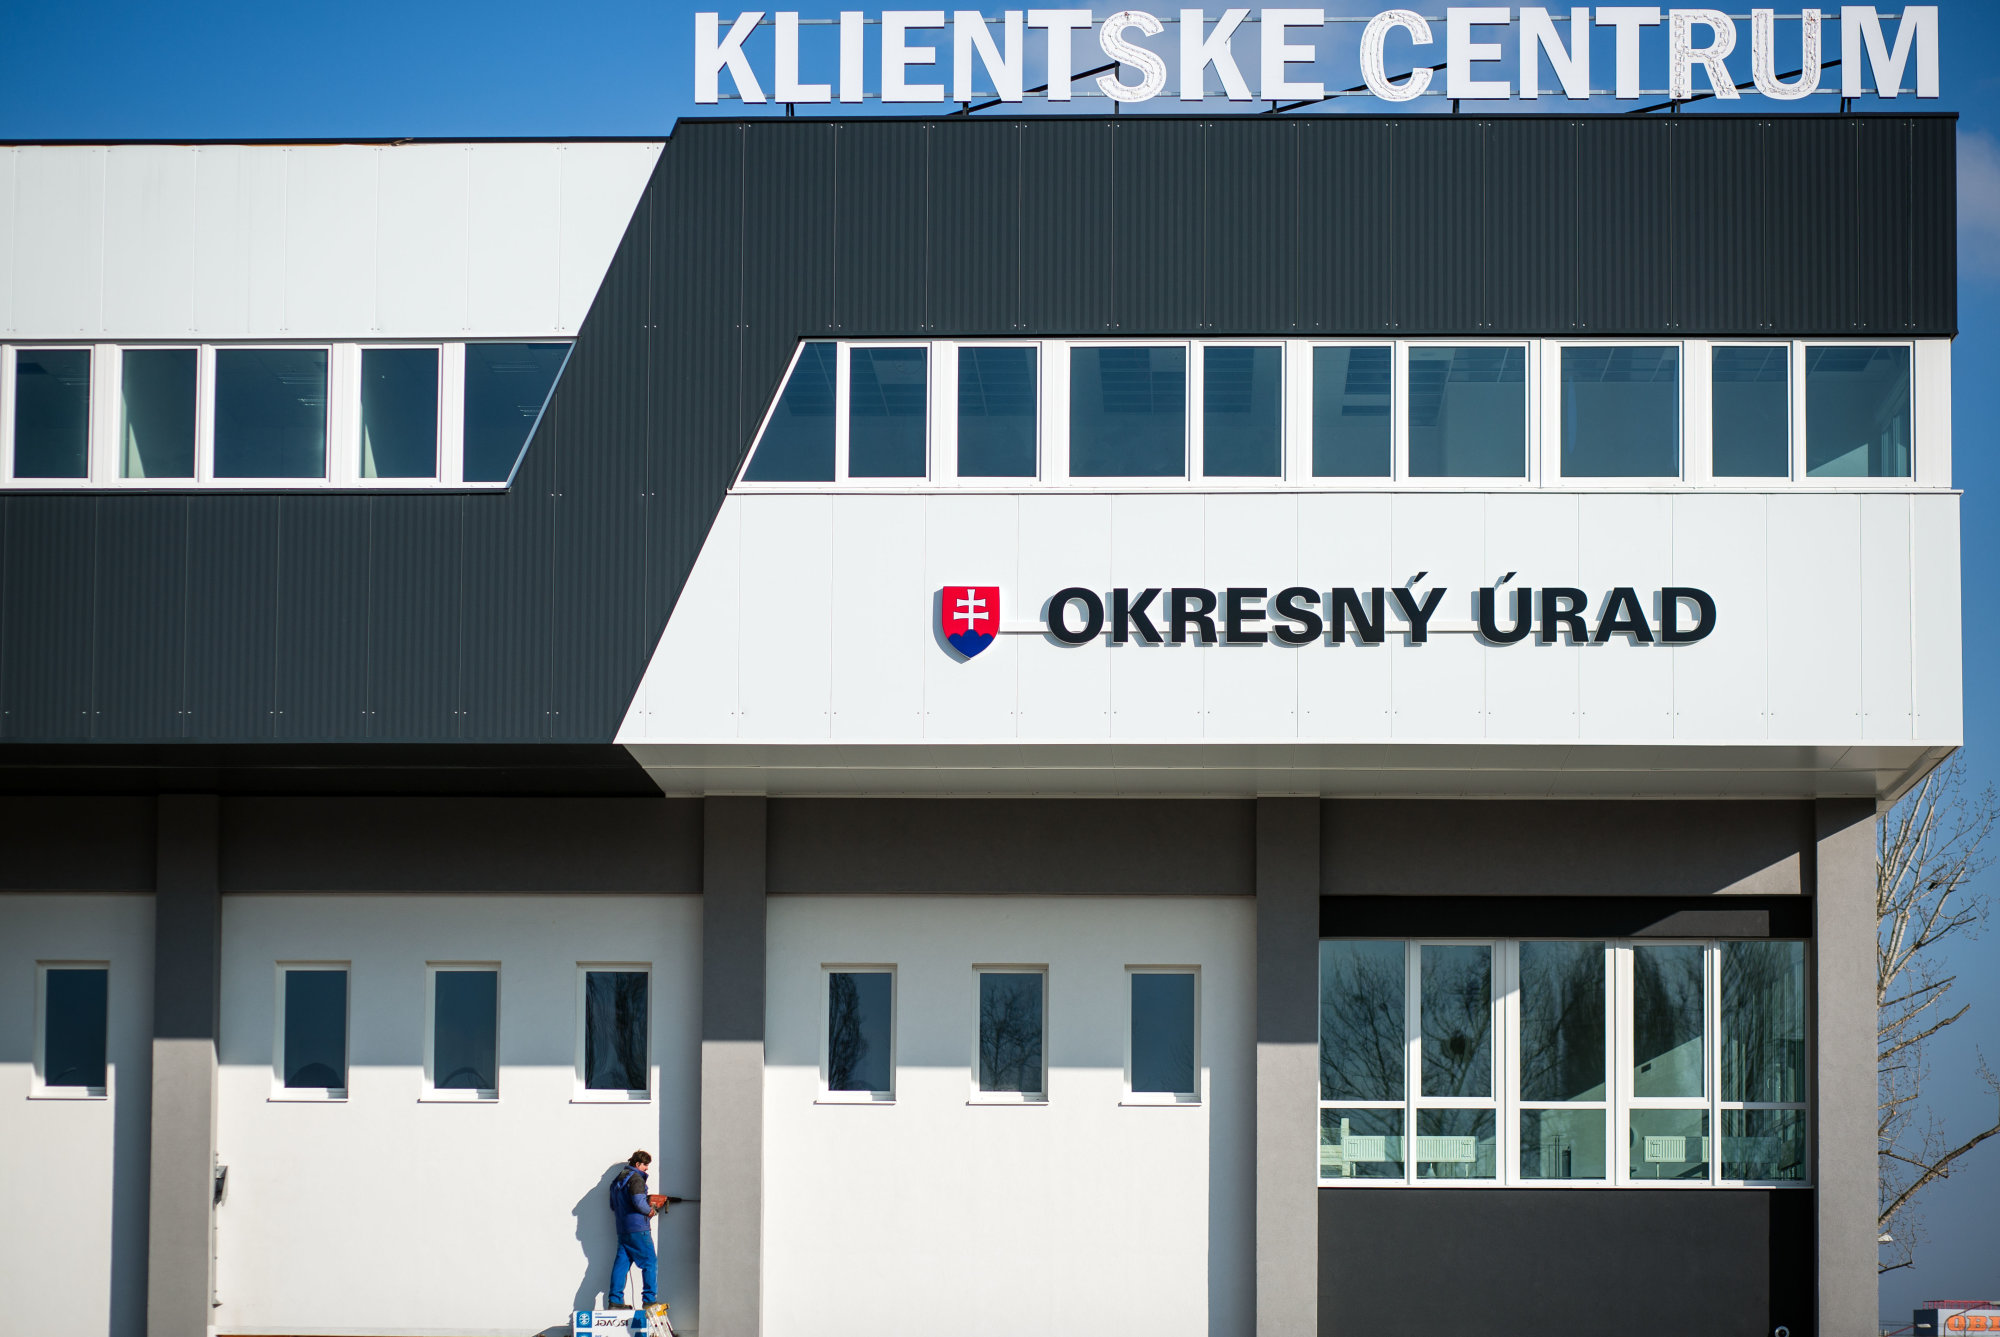 V klientskom centre v Bratislave bola razia, úplatky tam kryli cez sprostredkovateľskú firmu – Denník N